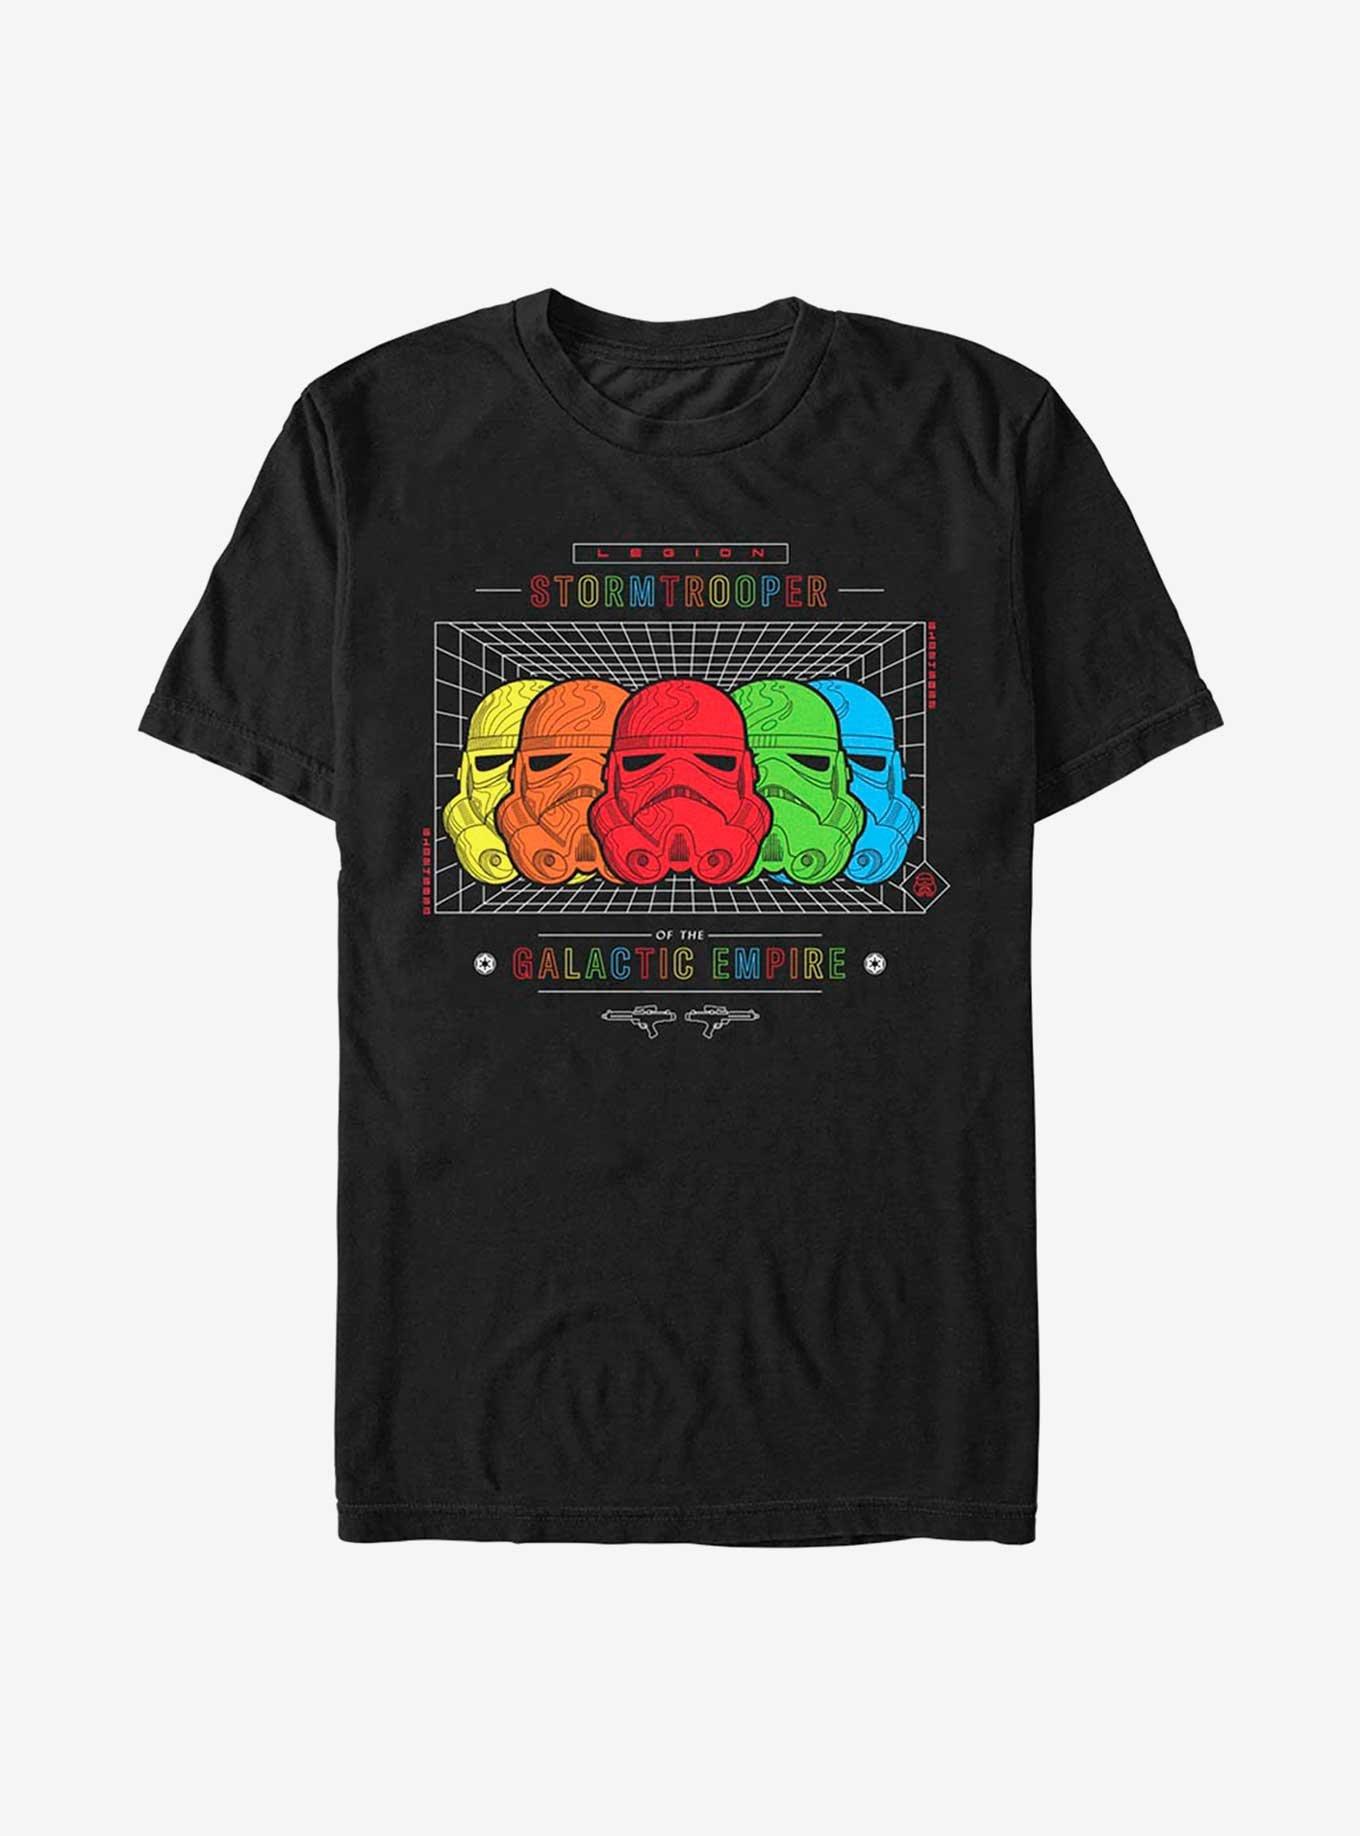 Star Wars Schematic Troops Pride T-Shirt